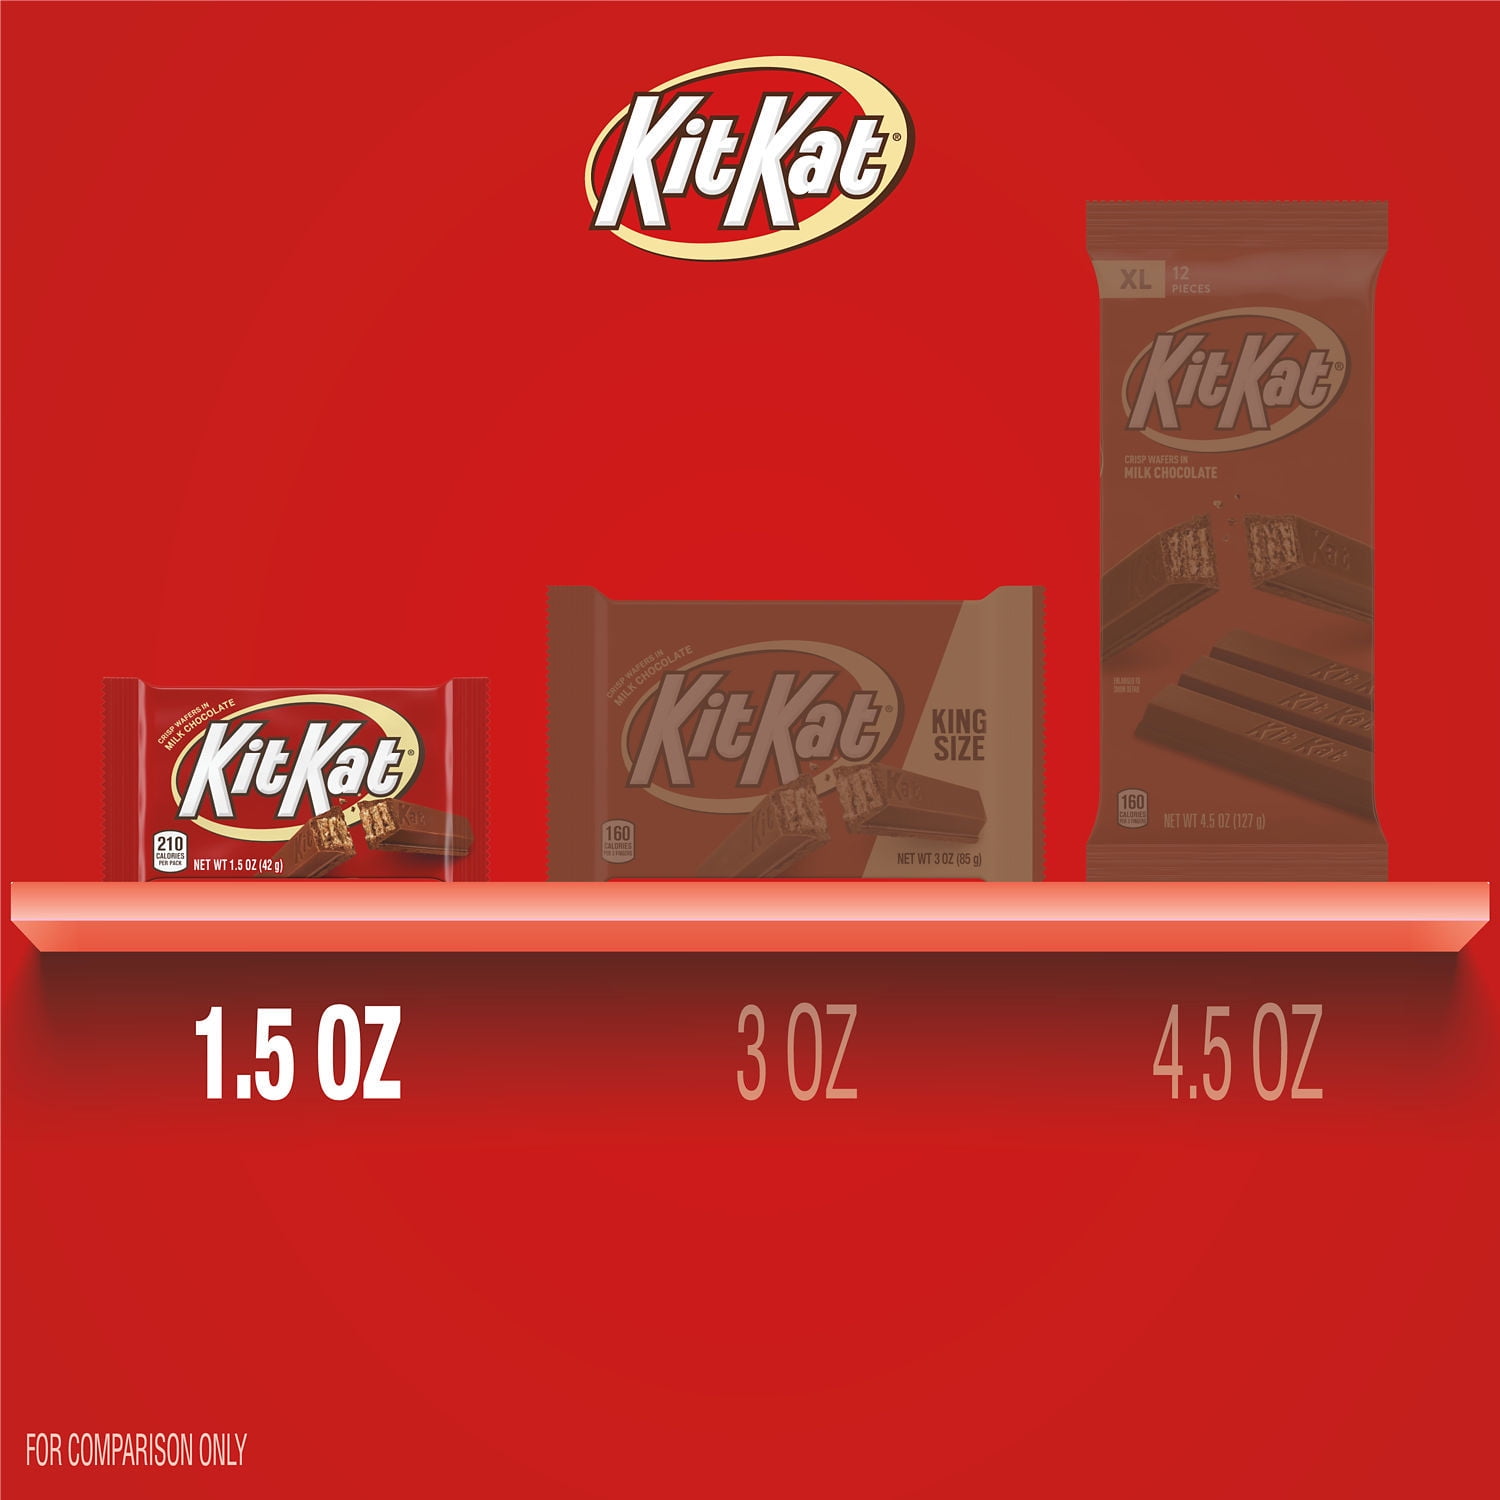 Kit Kat Candy Bar 36 Count